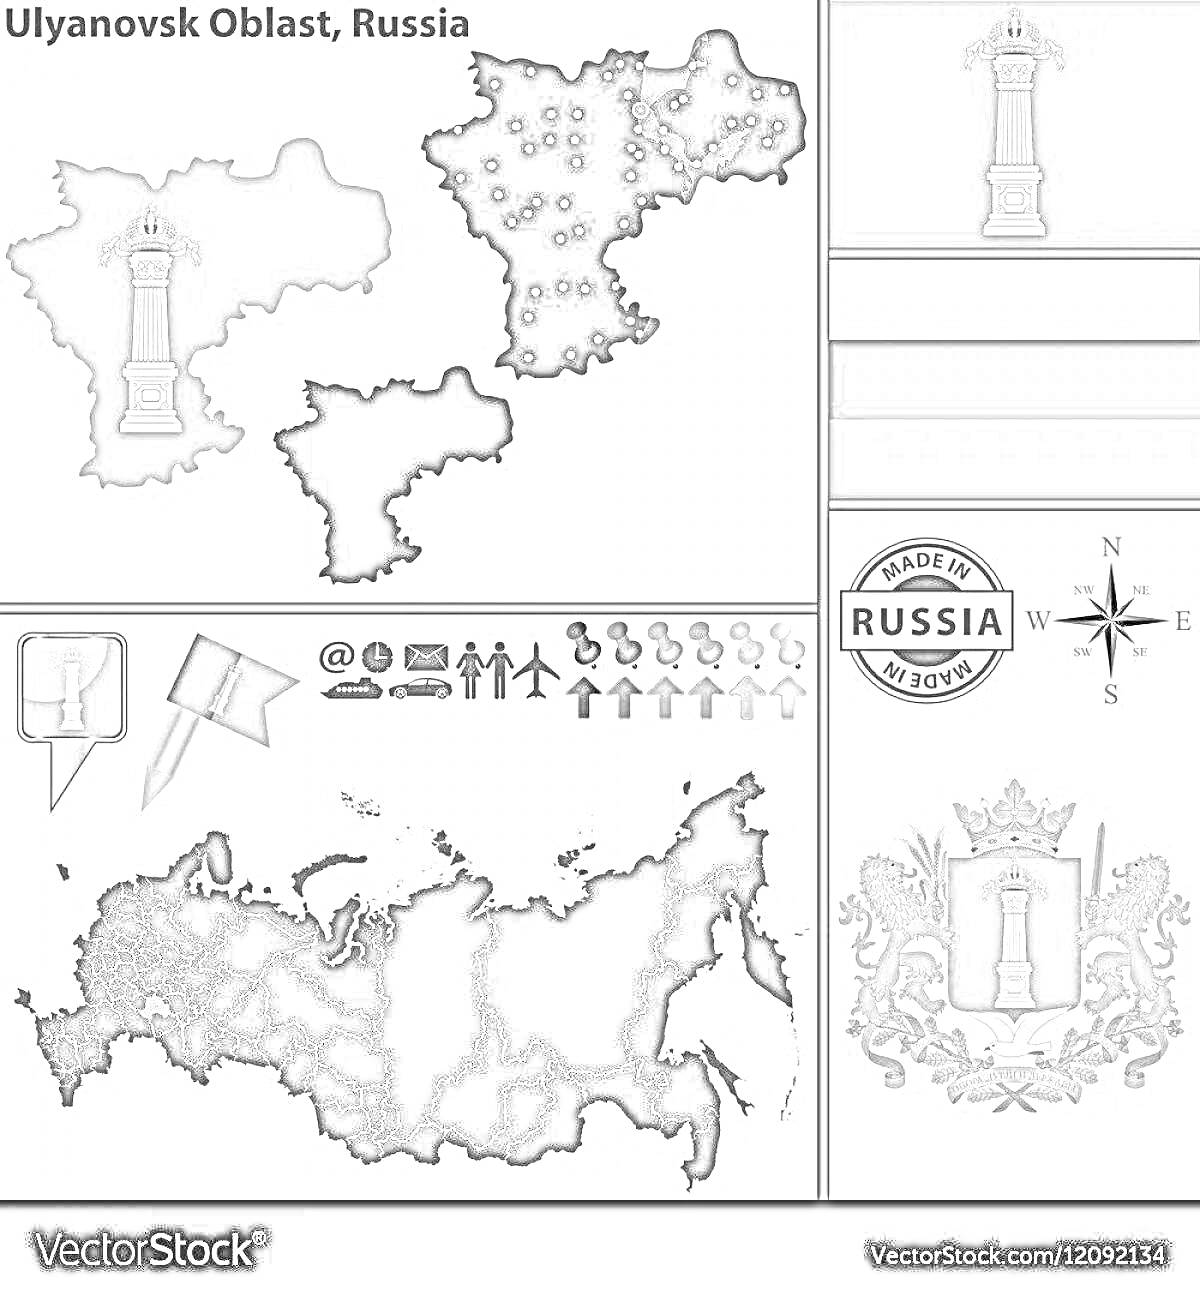 Карта Ульяновской области с указателями, гербом, флагом, компасом и общей картой России.